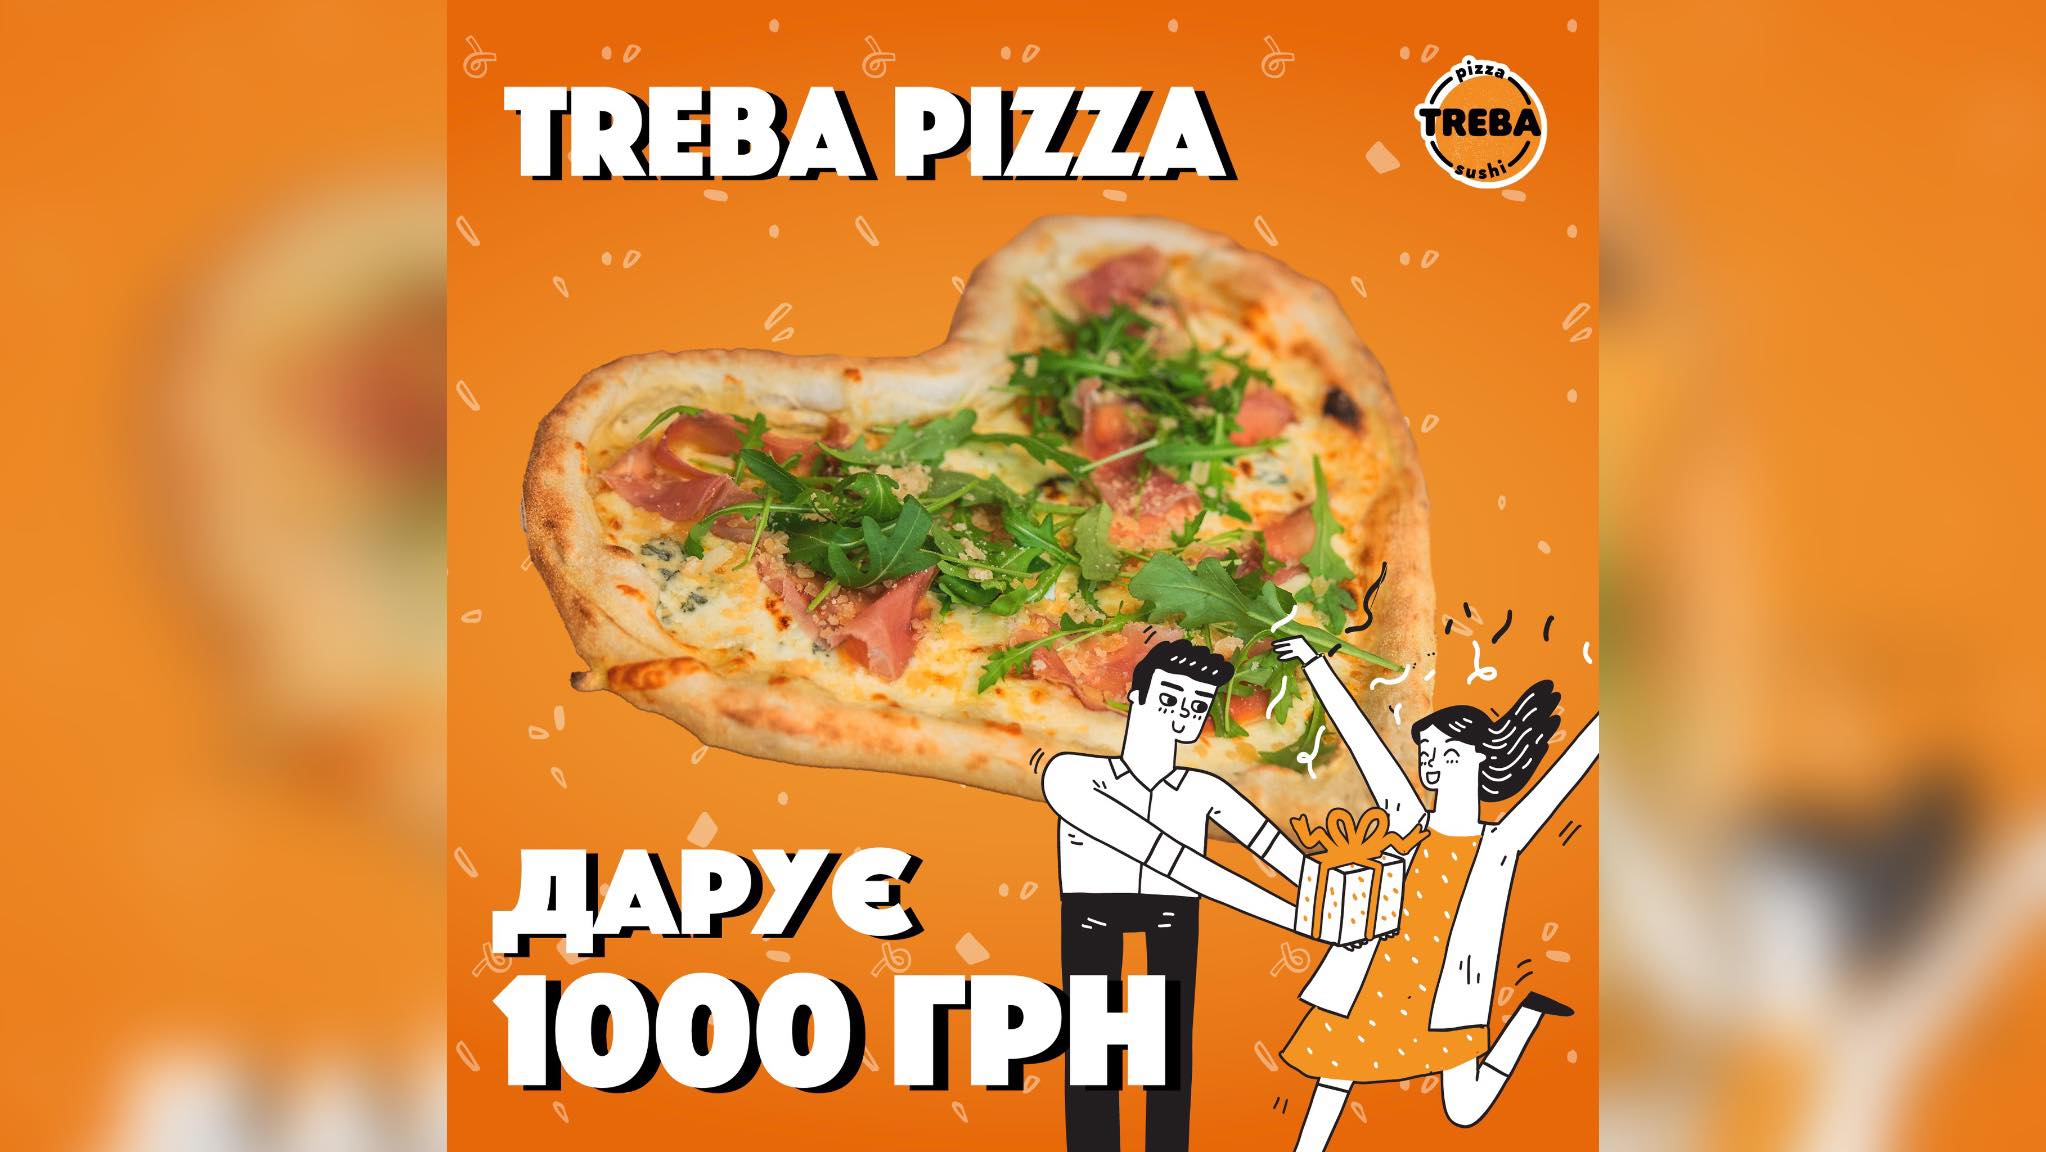 TREBA PIZZA дарує 1000 грн на романтичну вечерю